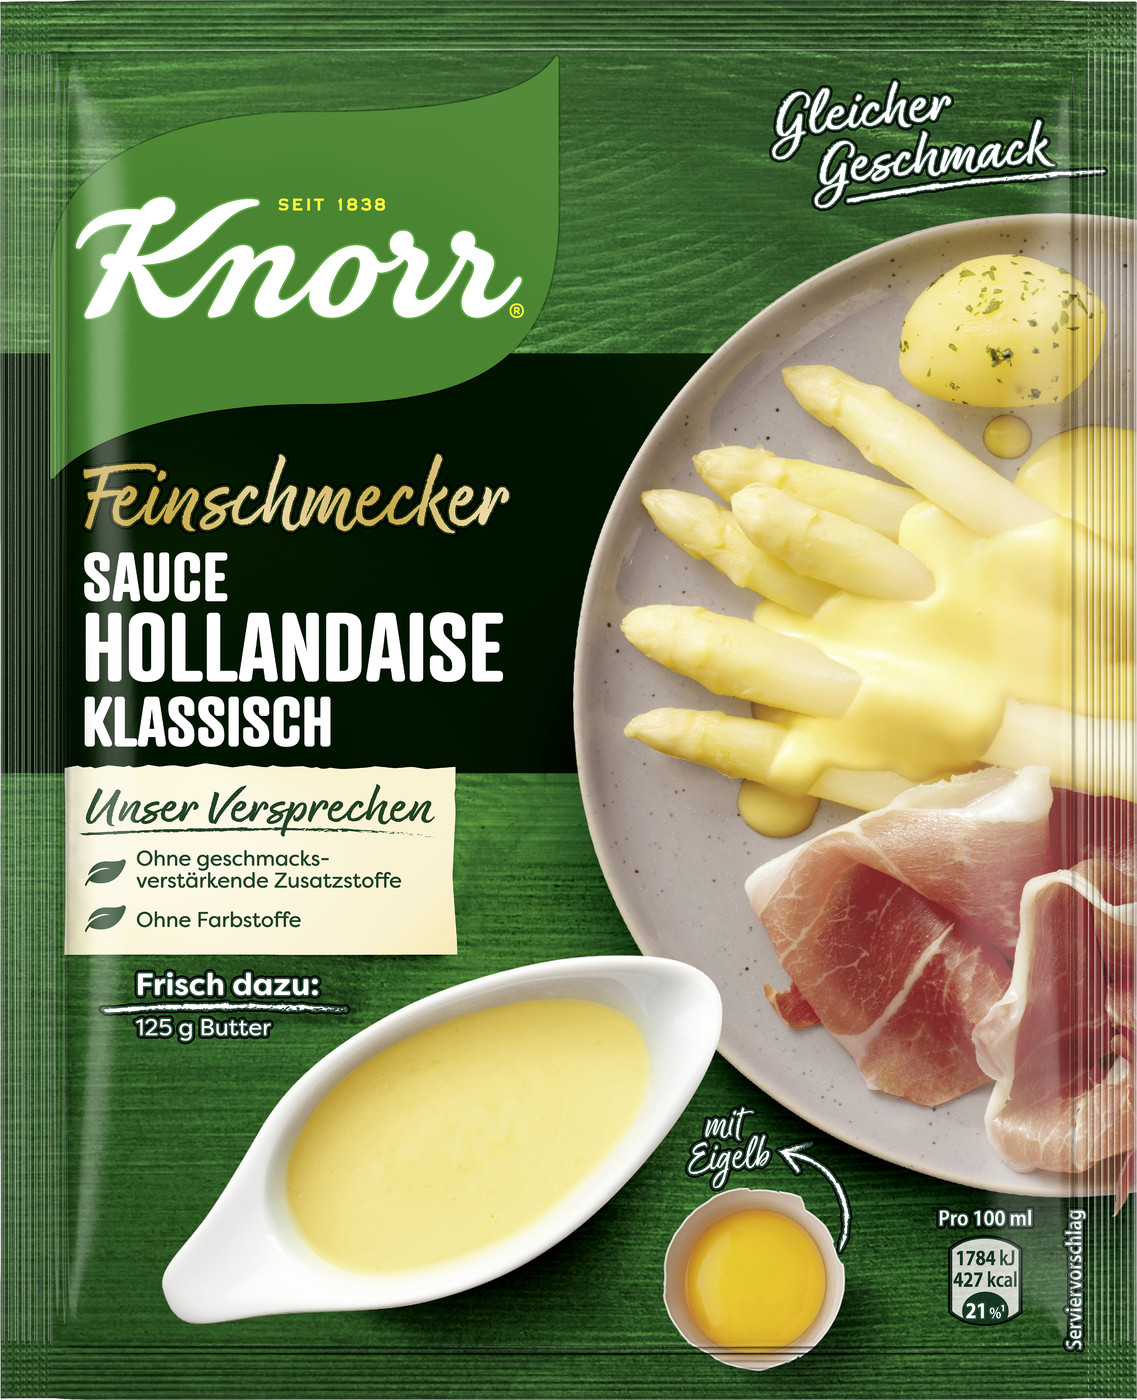 Knorr Feinschmecker Sauce Hollandaise Klassisch 35G